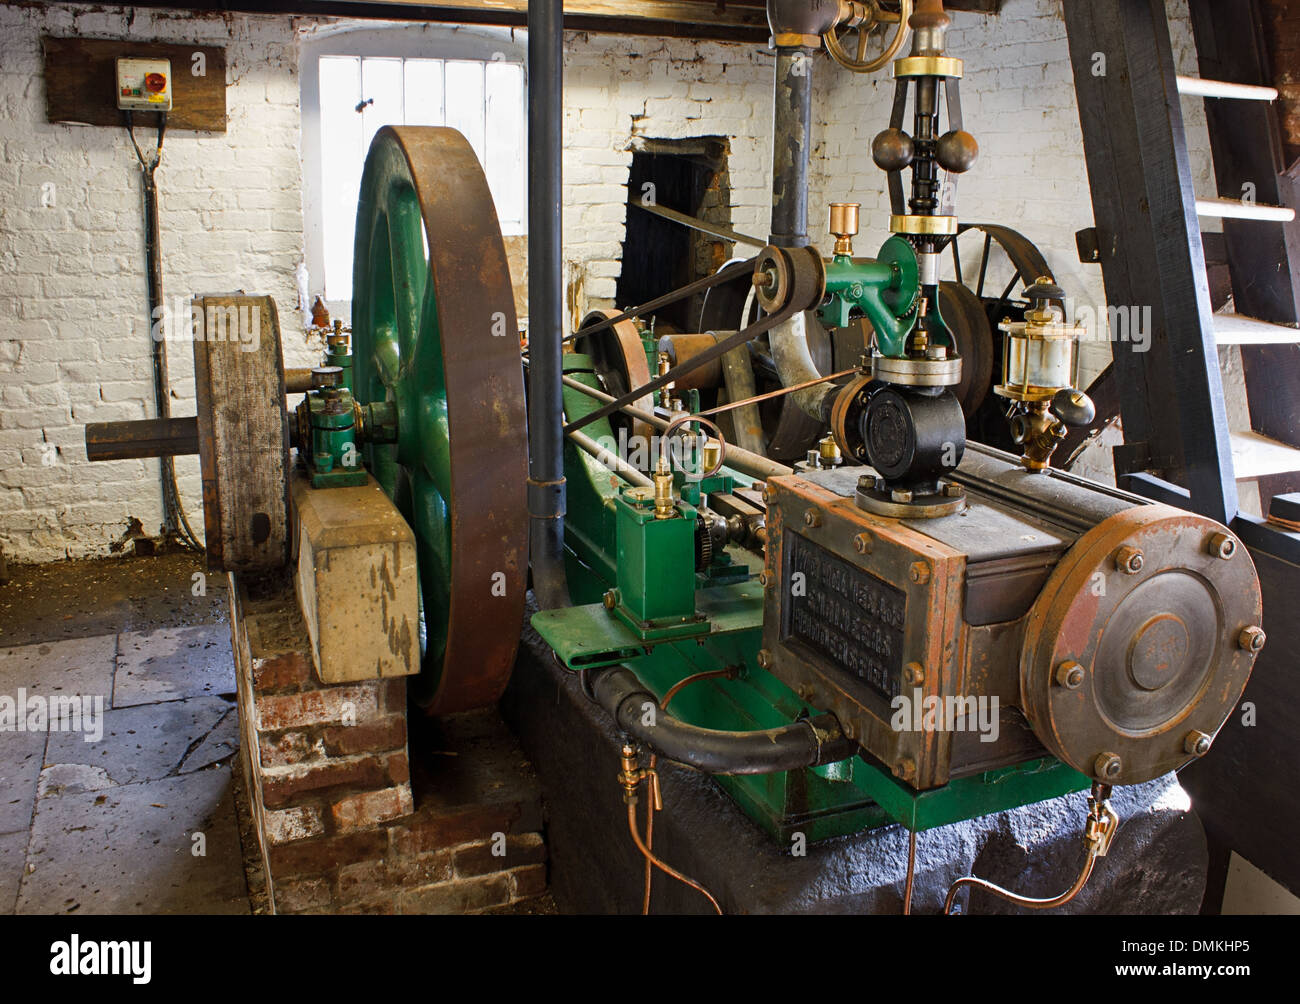 Machine à vapeur miniature Joséphine une fois restauré par Fred Dibnah Wetheriggs, situé à la poterie, près de Penrith, Cumbria Banque D'Images